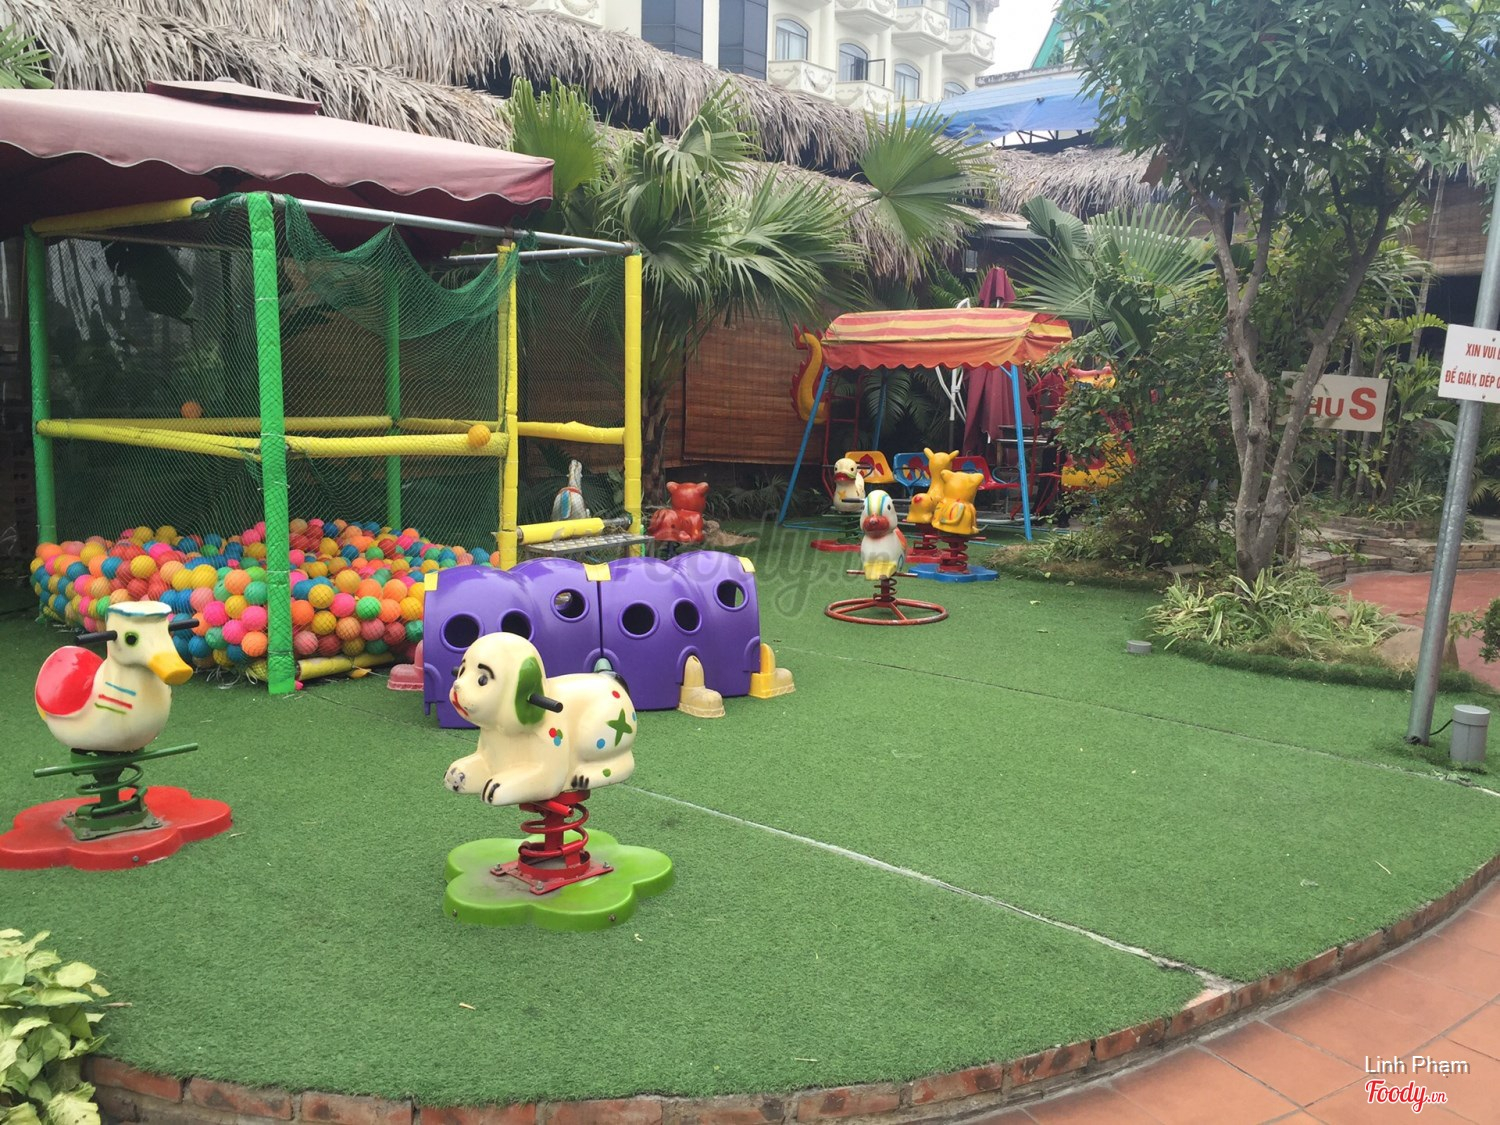 Nhà hàng có chỗ chơi cho trẻ con ở Hà Nội - Nhà hàng Bò Tơ Tây Ninh Tài Sanh